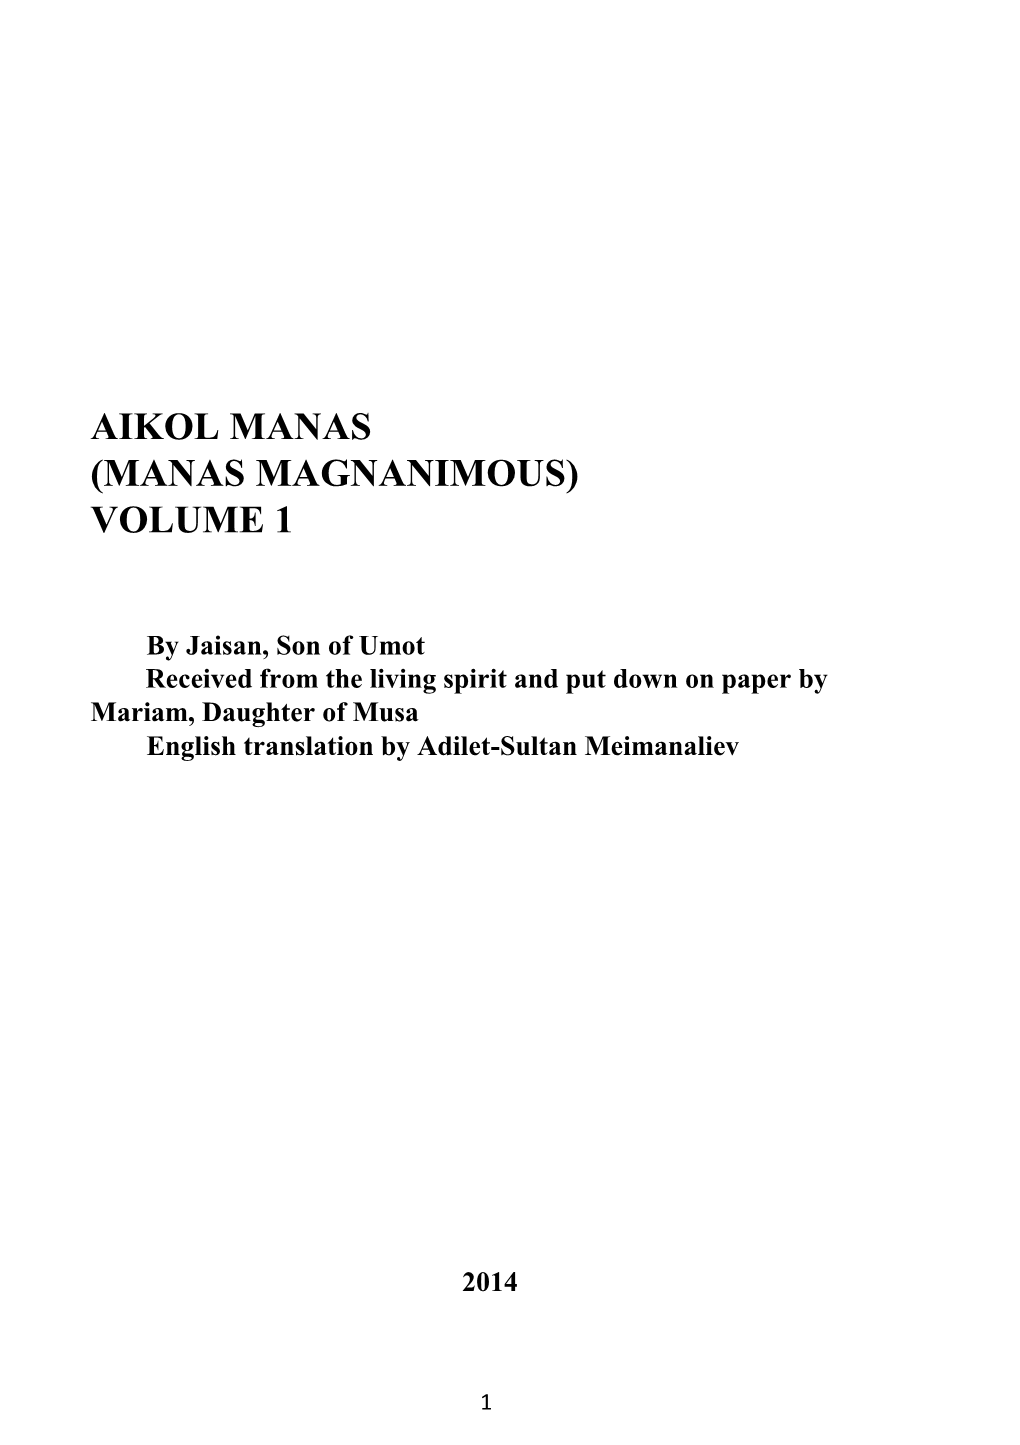 Aikol Manas (Manas Magnanimous) Volume 1